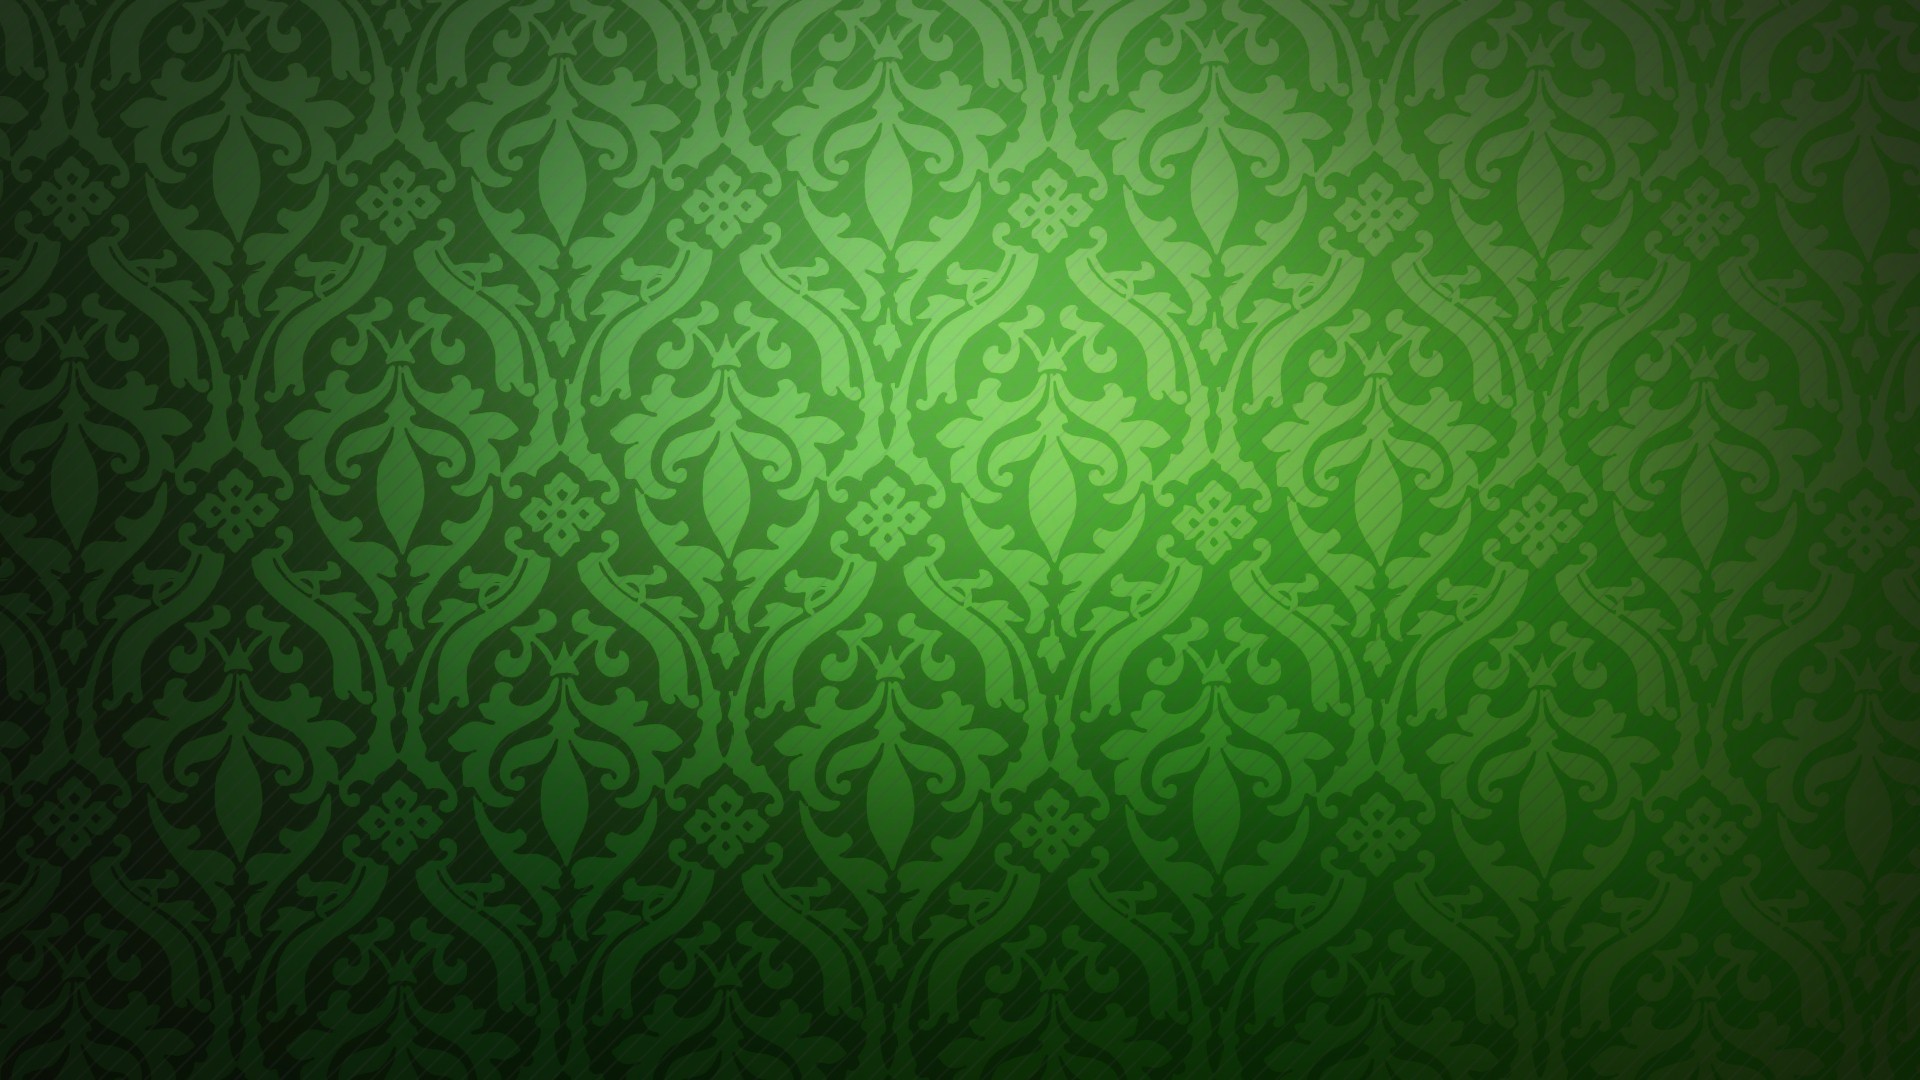 Luxury Decorative Green Wallpaper Price in India - Buy Luxury Decorative Green  Wallpaper online at Flipkart.com